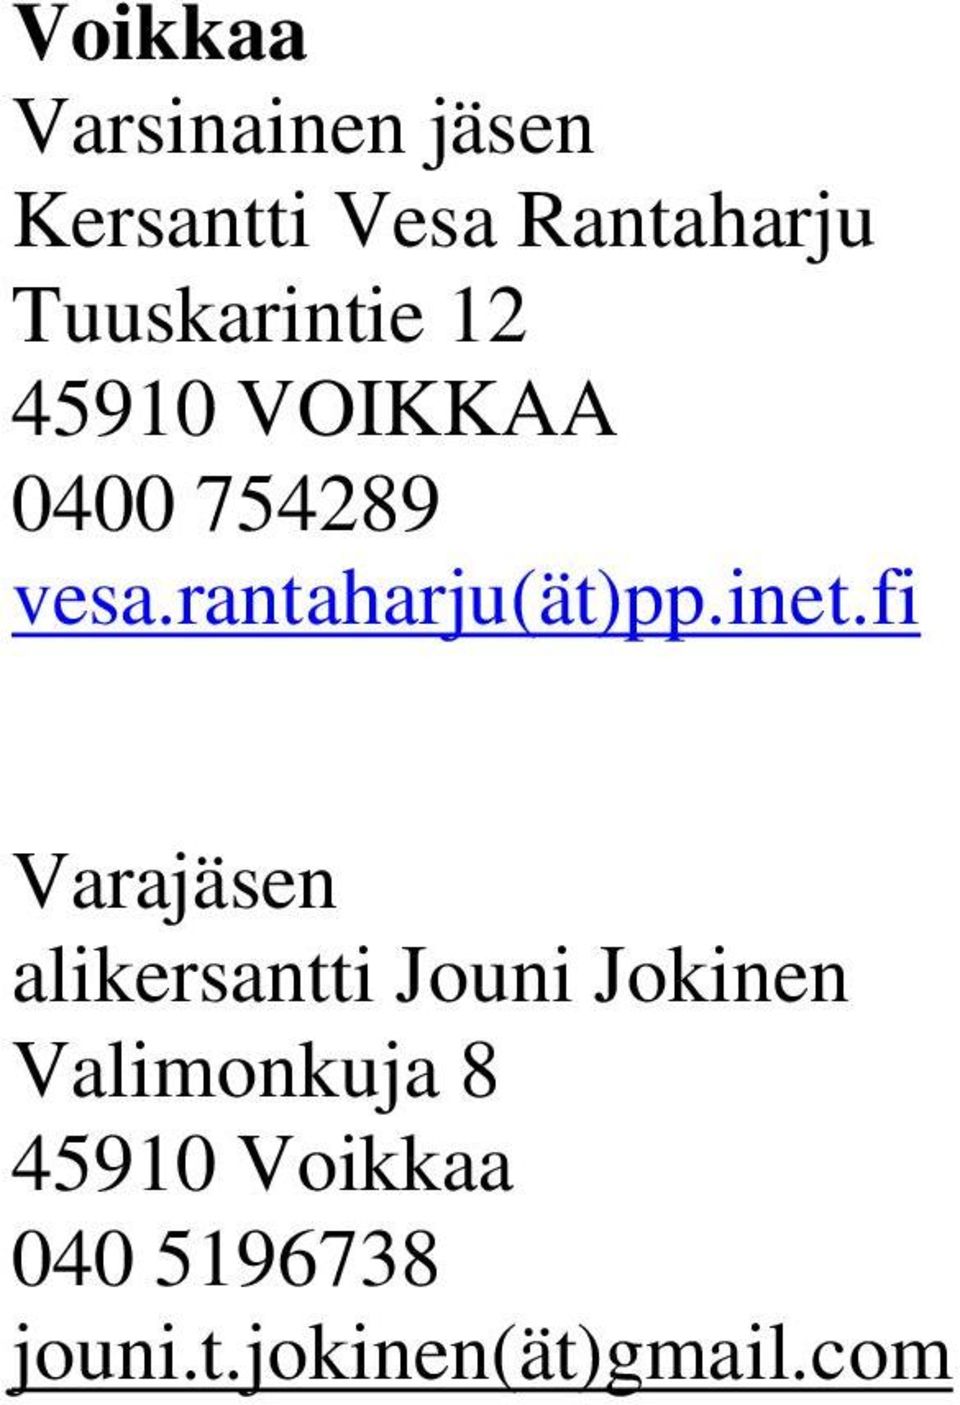 inet.fi alikersantti Jouni Jokinen Valimonkuja 8